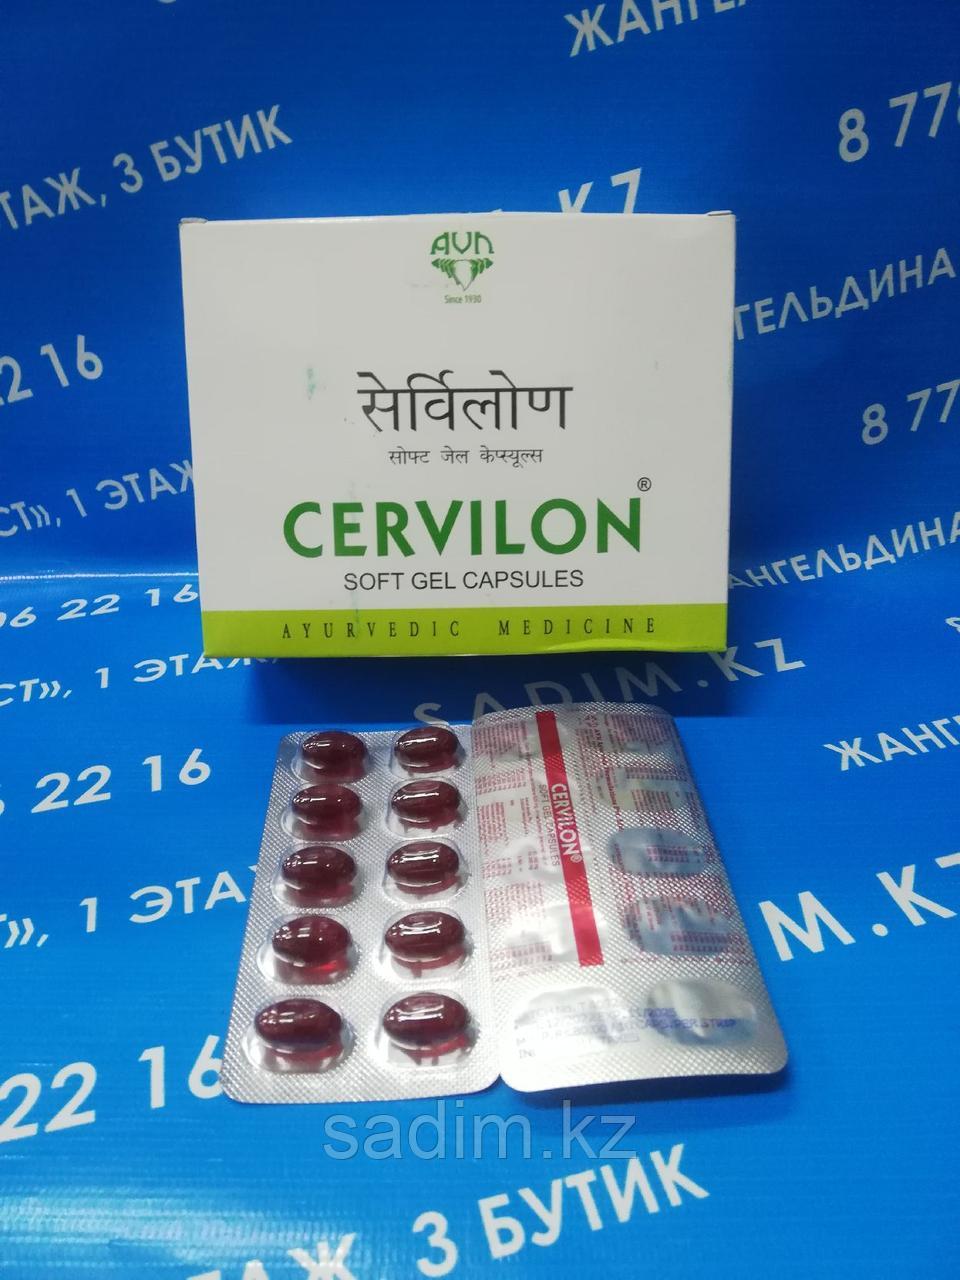 Cervilon (Цервилон) - для здоровья шейного отдела позвоночника